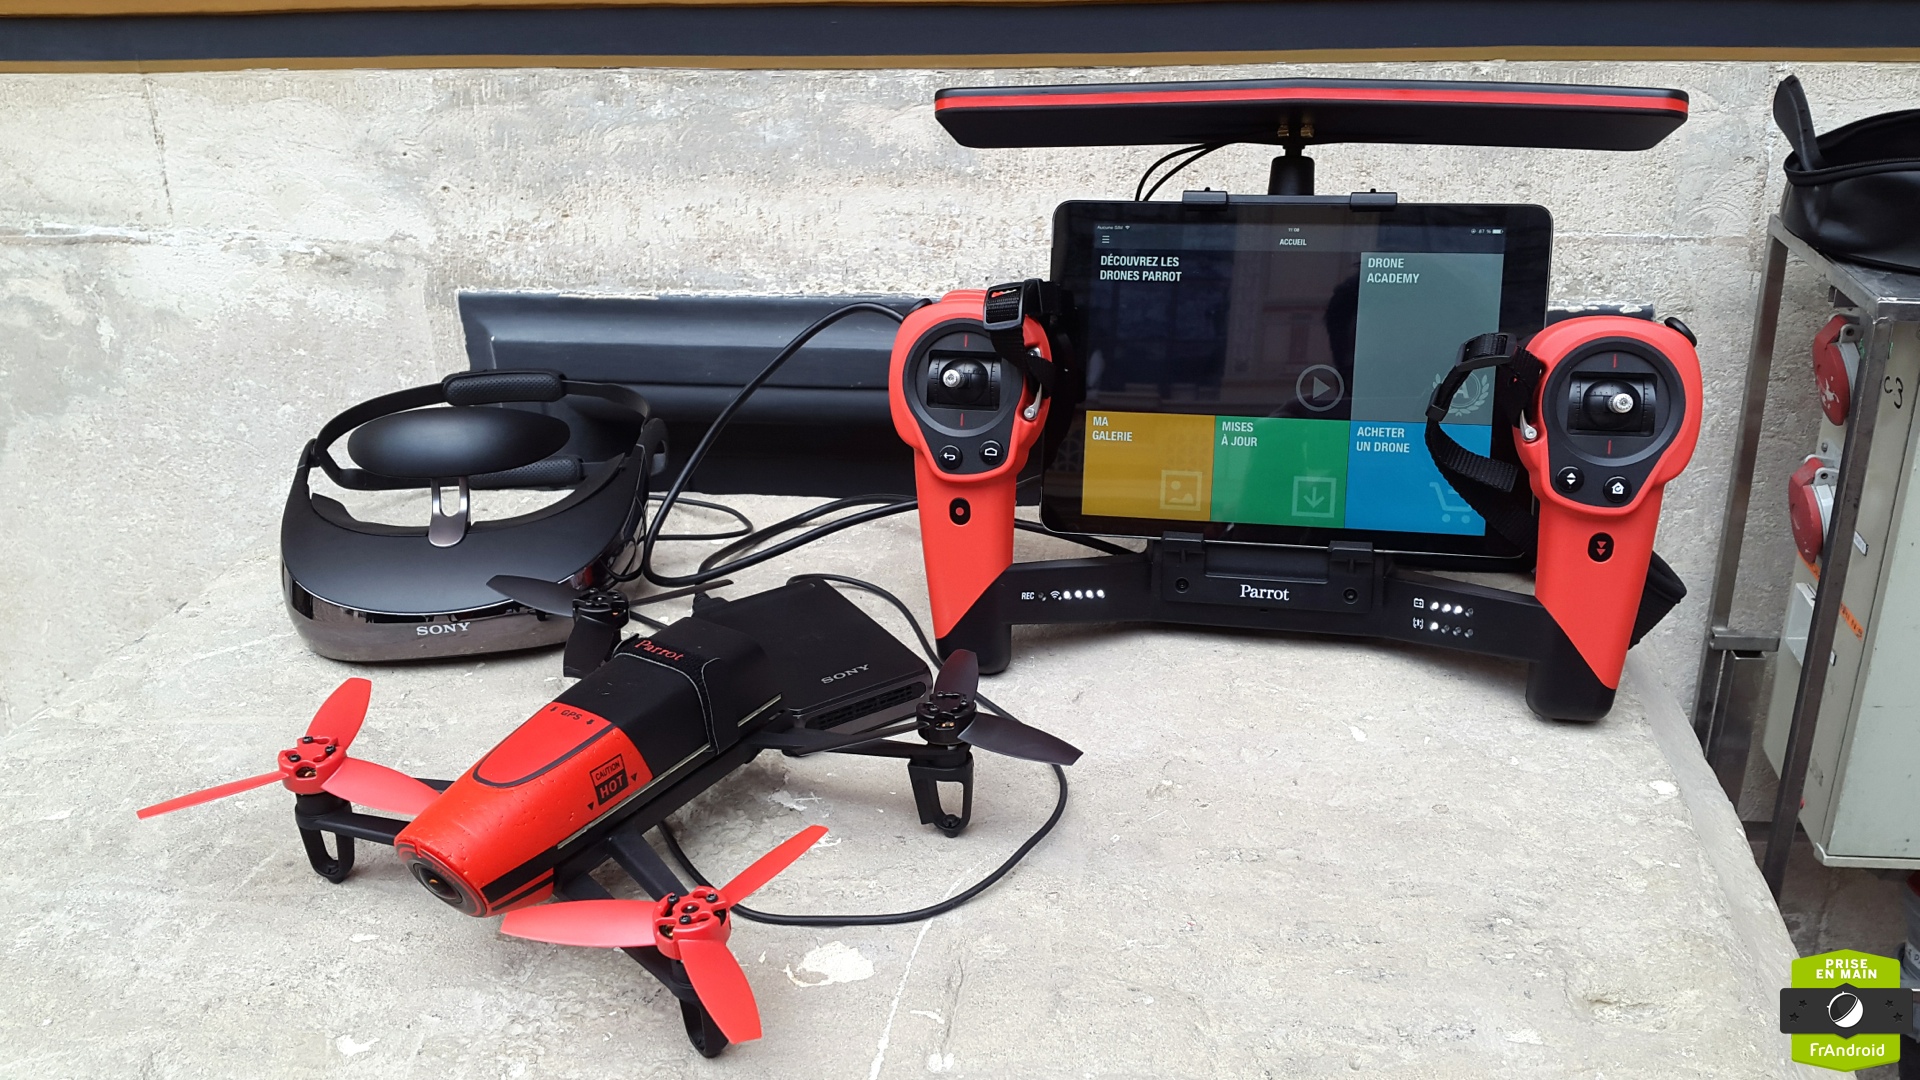 Volez et visitez en drone avec un casque de réalité virtuelle